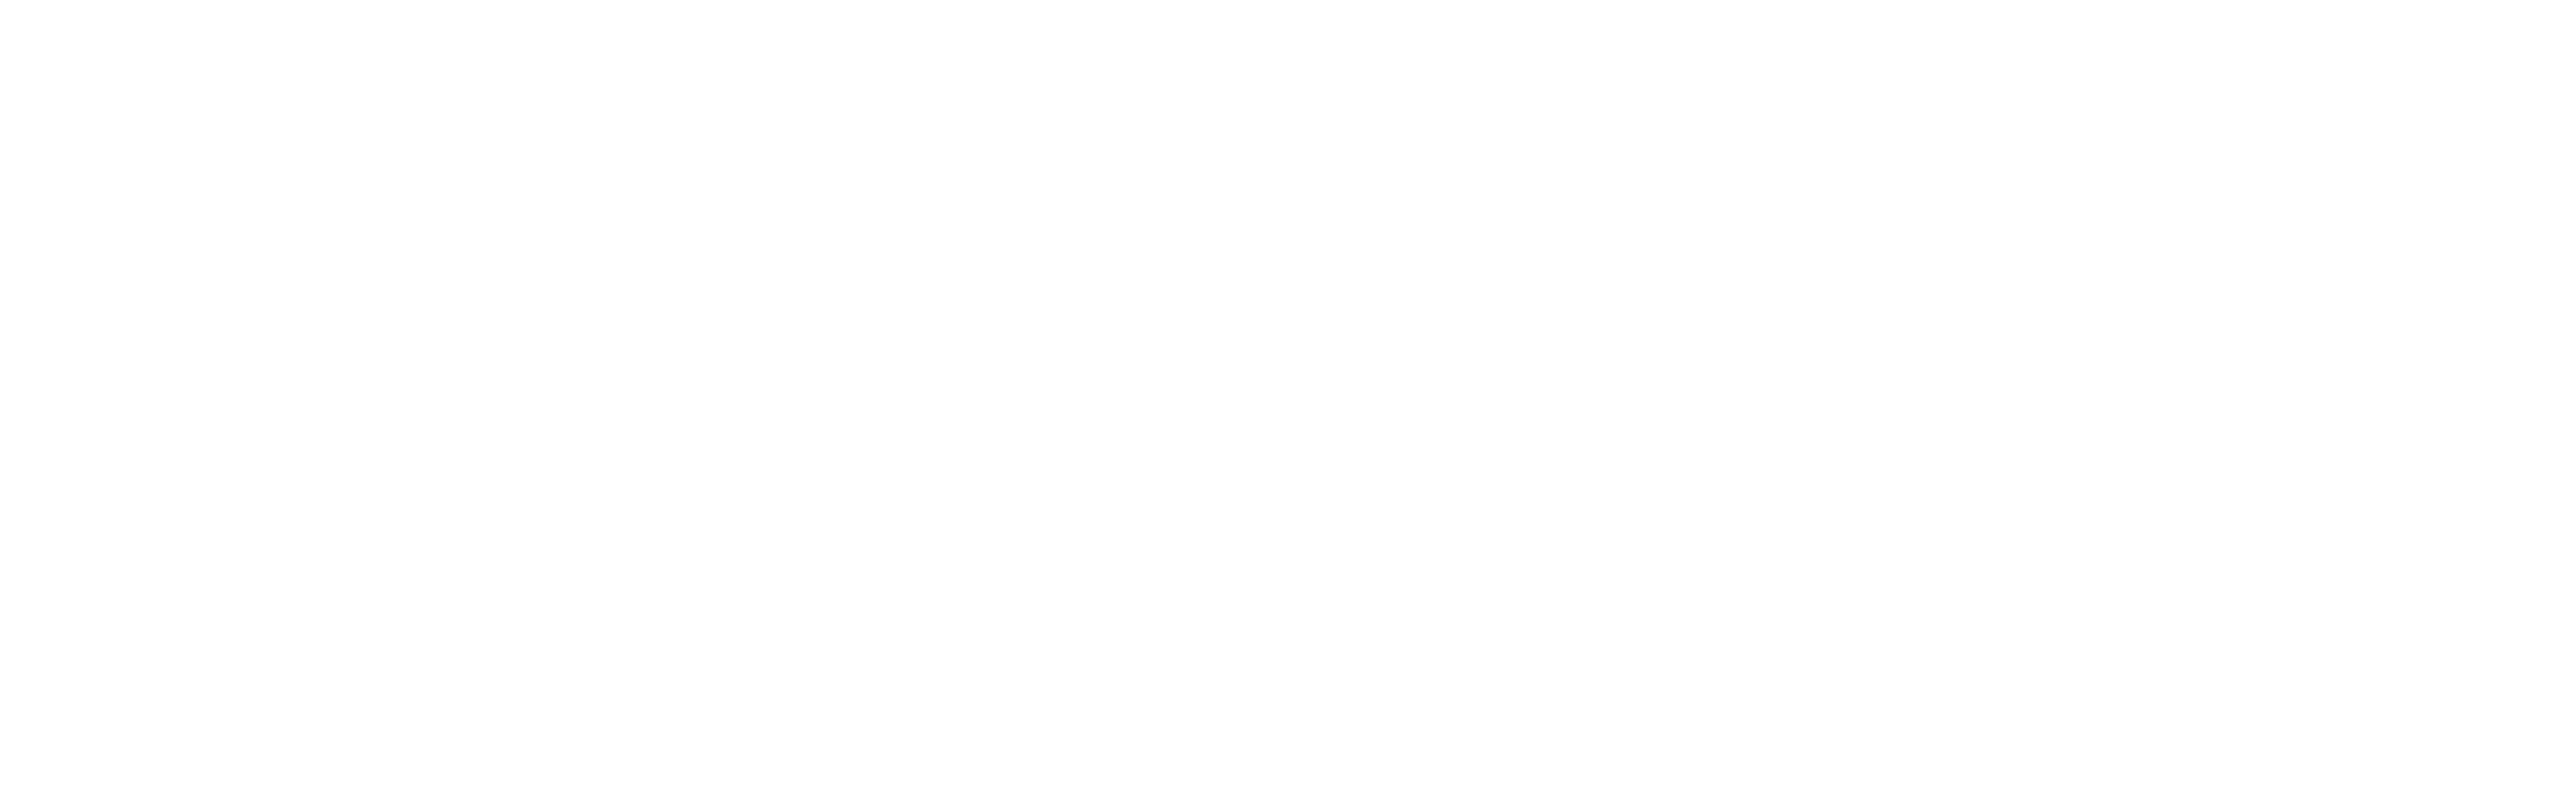 Mississippi Grind logo